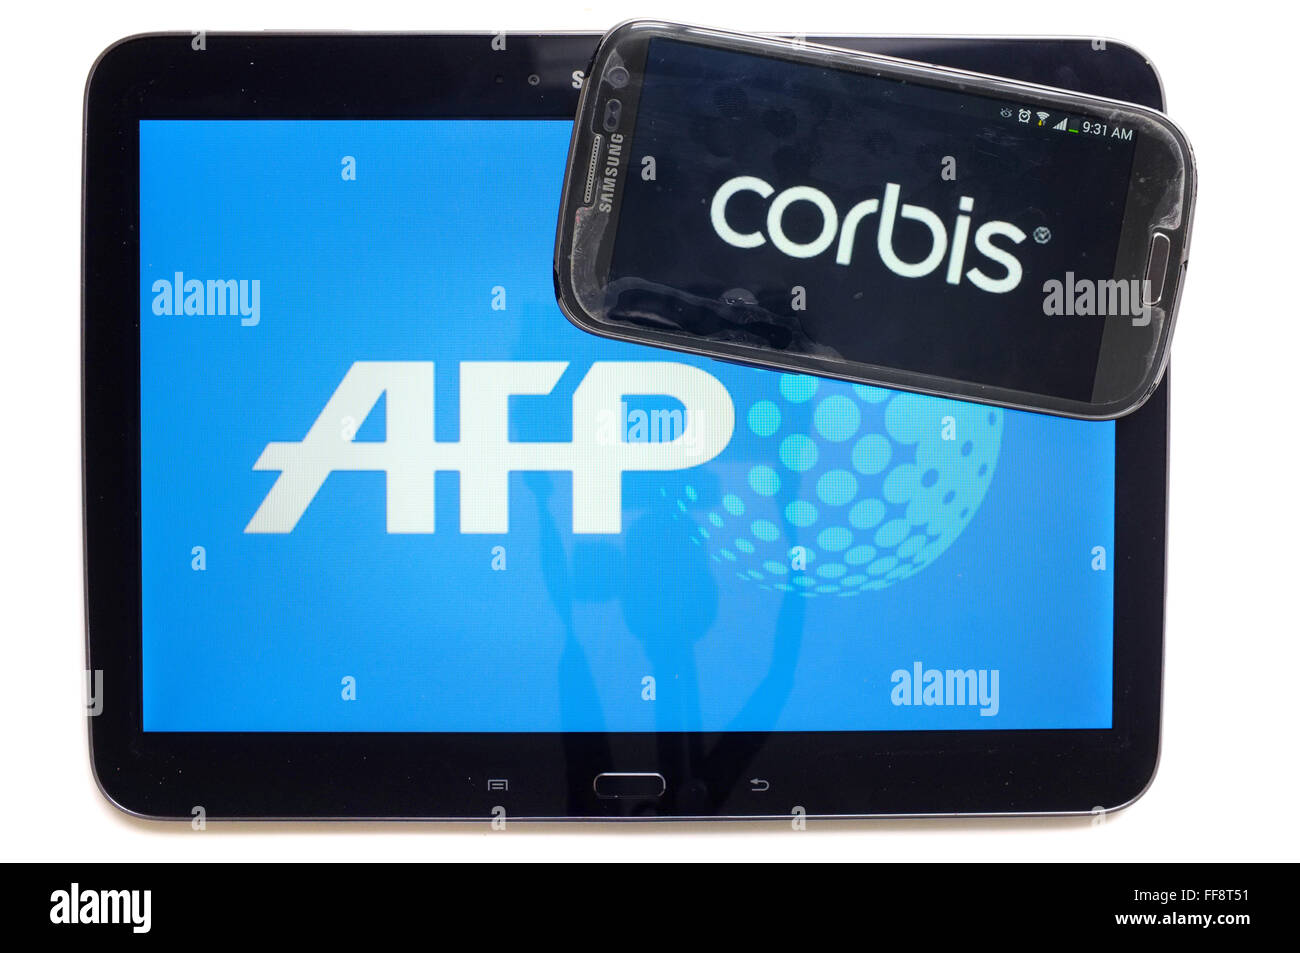 Les agences de presse AFP et Corbis sur les écrans d'une tablette et un smartphone photographié sur un fond blanc. Banque D'Images